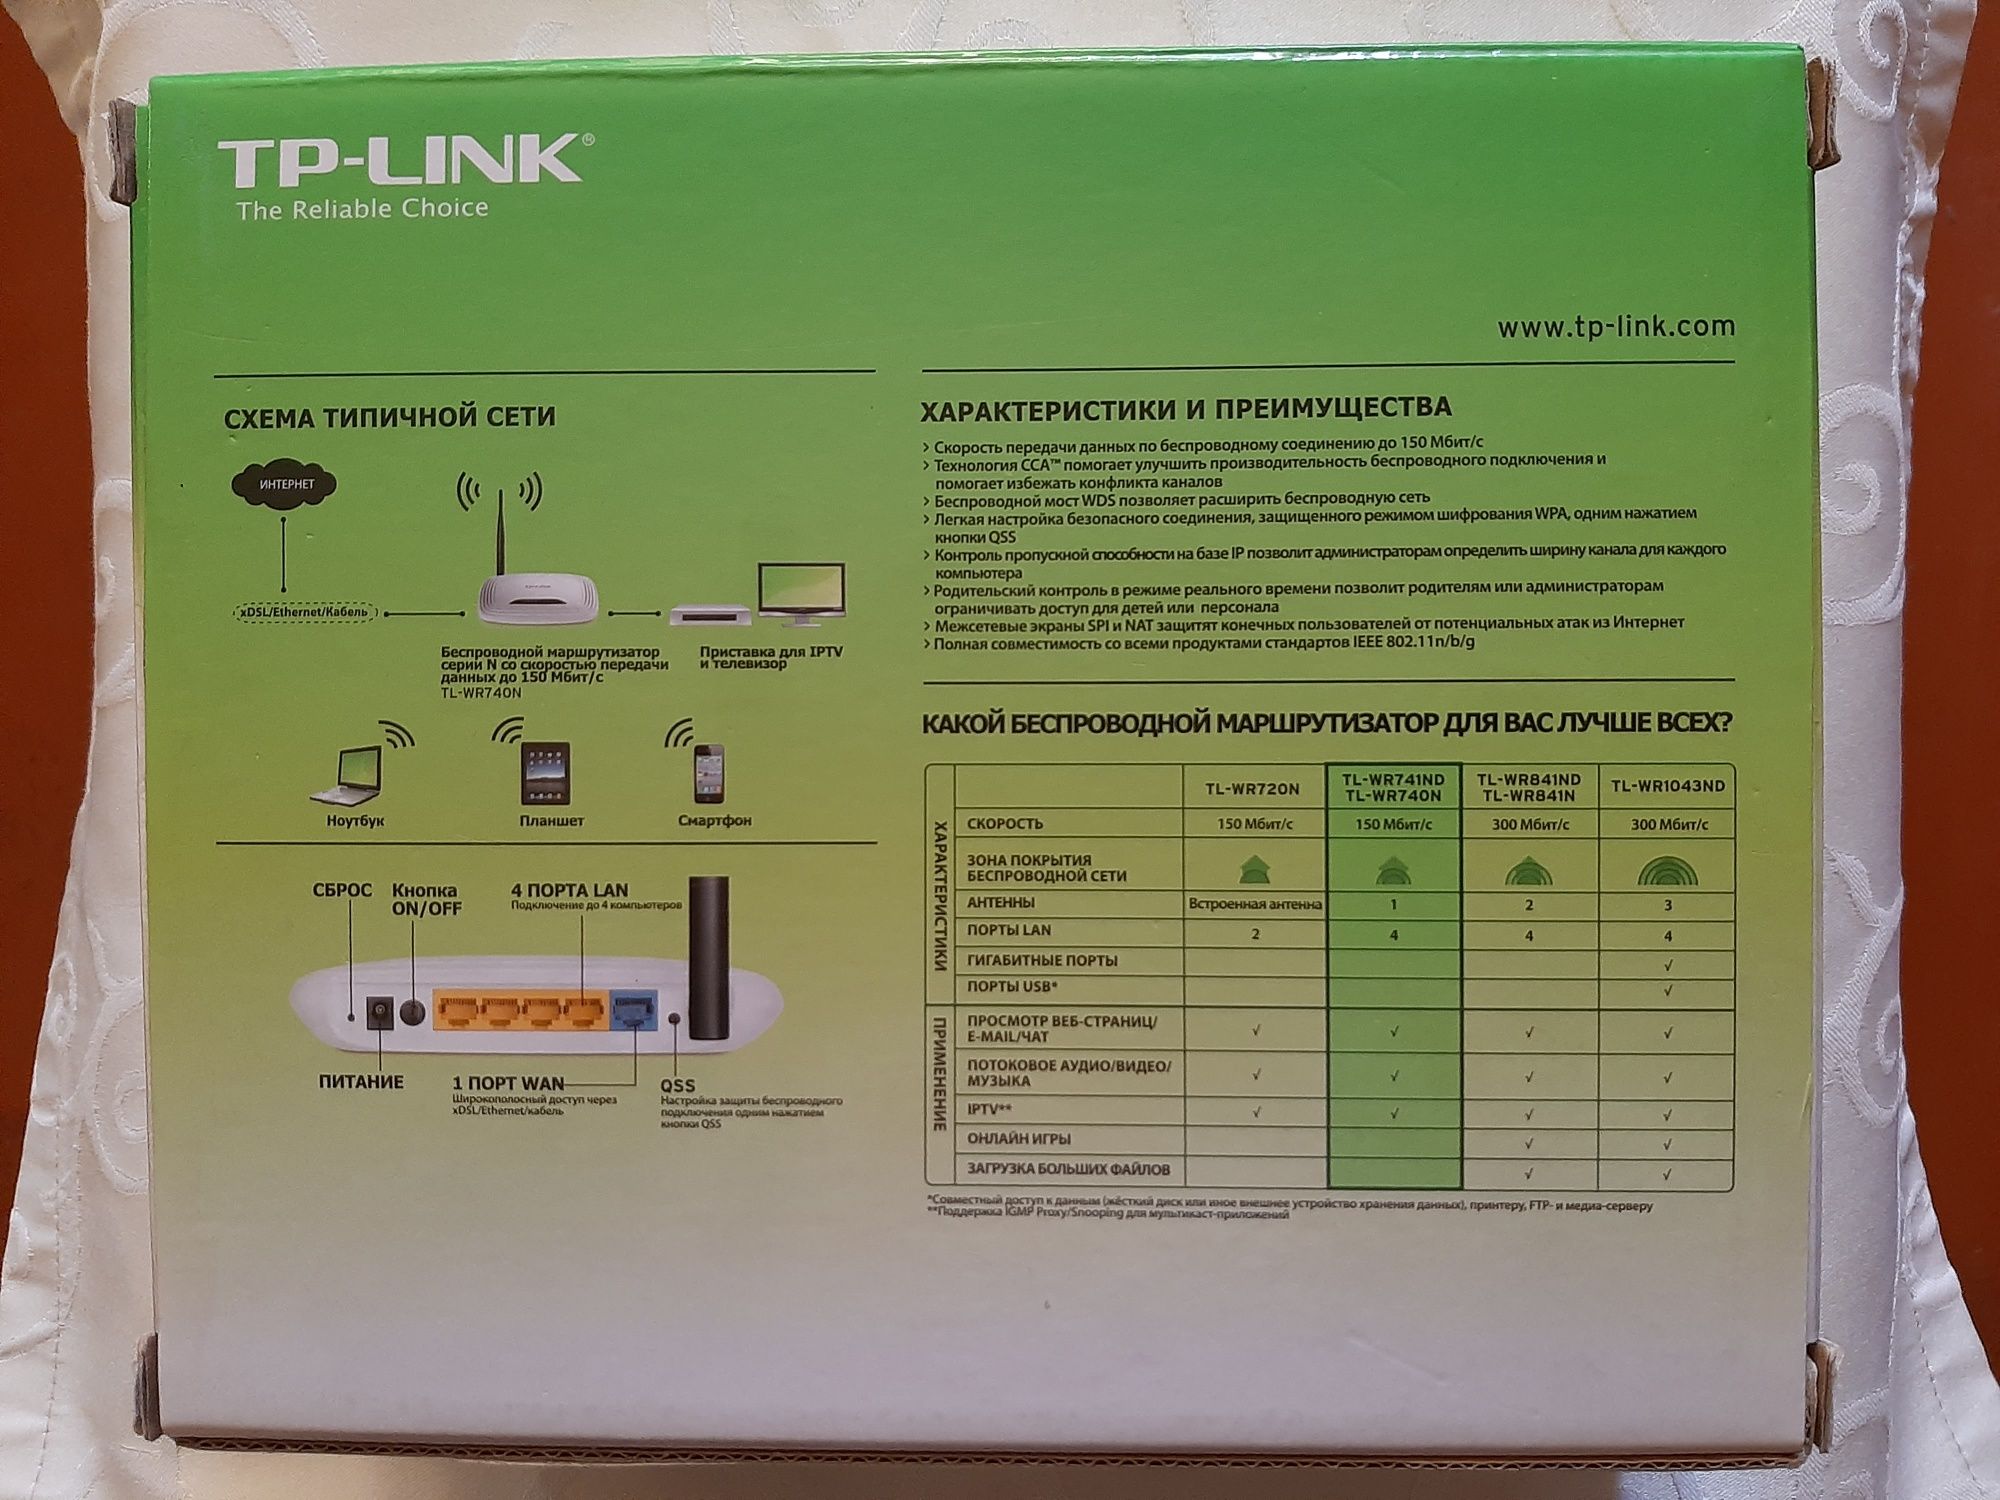 Продам роутер б/у TP-LINK модель TL-WR740N  рабочий в хорошем состояни